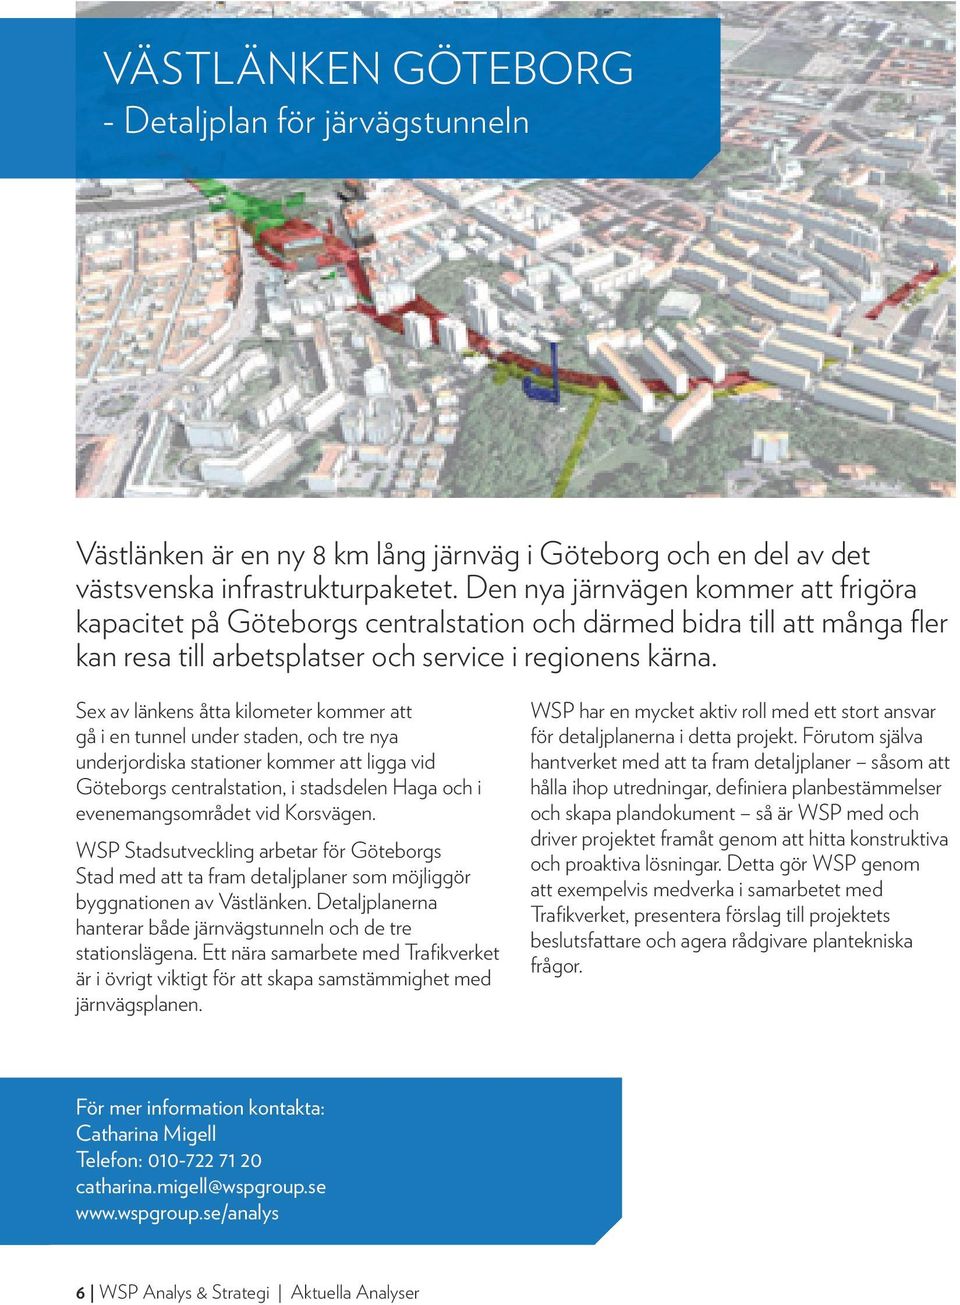 Sex av länkens åtta kilometer kommer att gå i en tunnel under staden, och tre nya underjordiska stationer kommer att ligga vid Göteborgs centralstation, i stadsdelen Haga och i evenemangsområdet vid